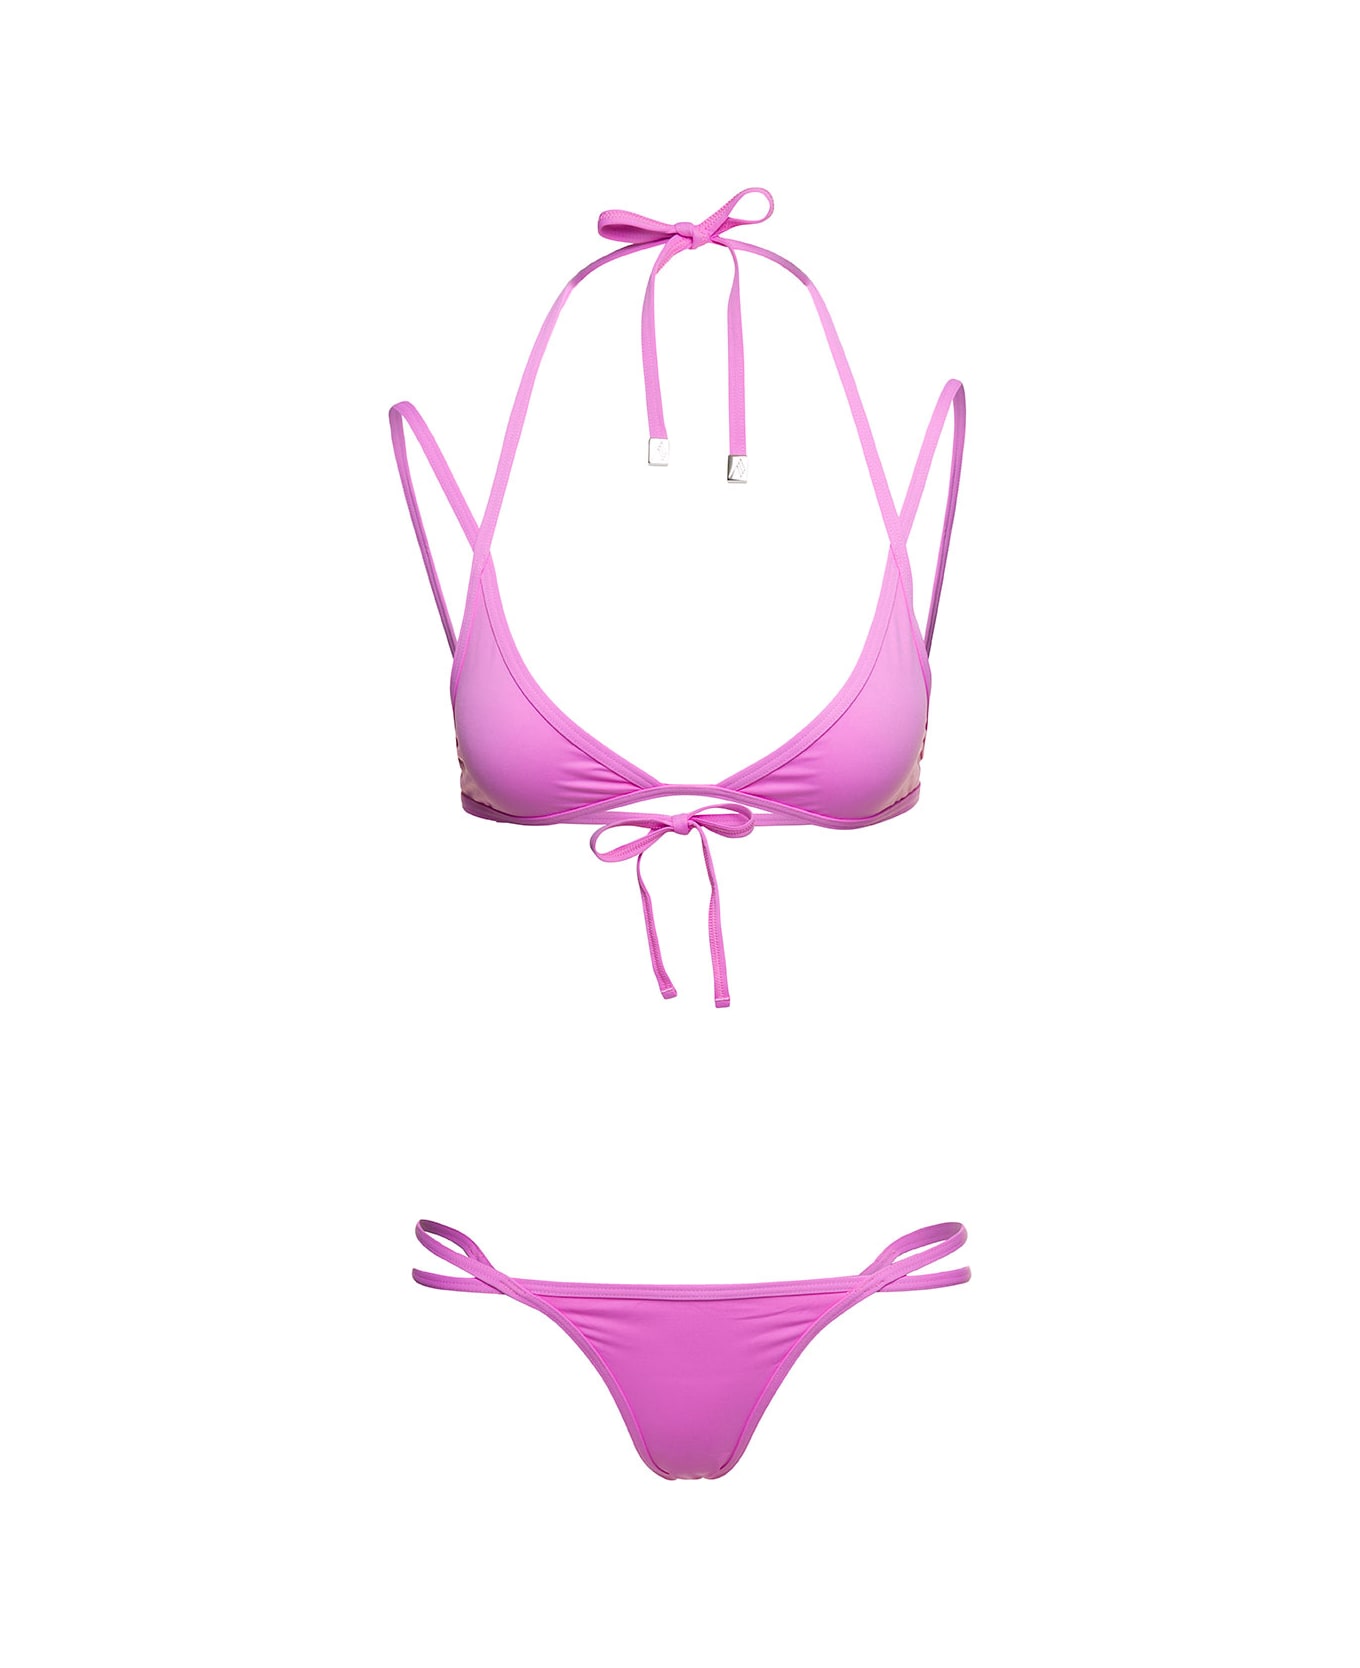 The Attico Triangle Cup Bikini Set In Pink Technical Fabric Woman - Pink 水着